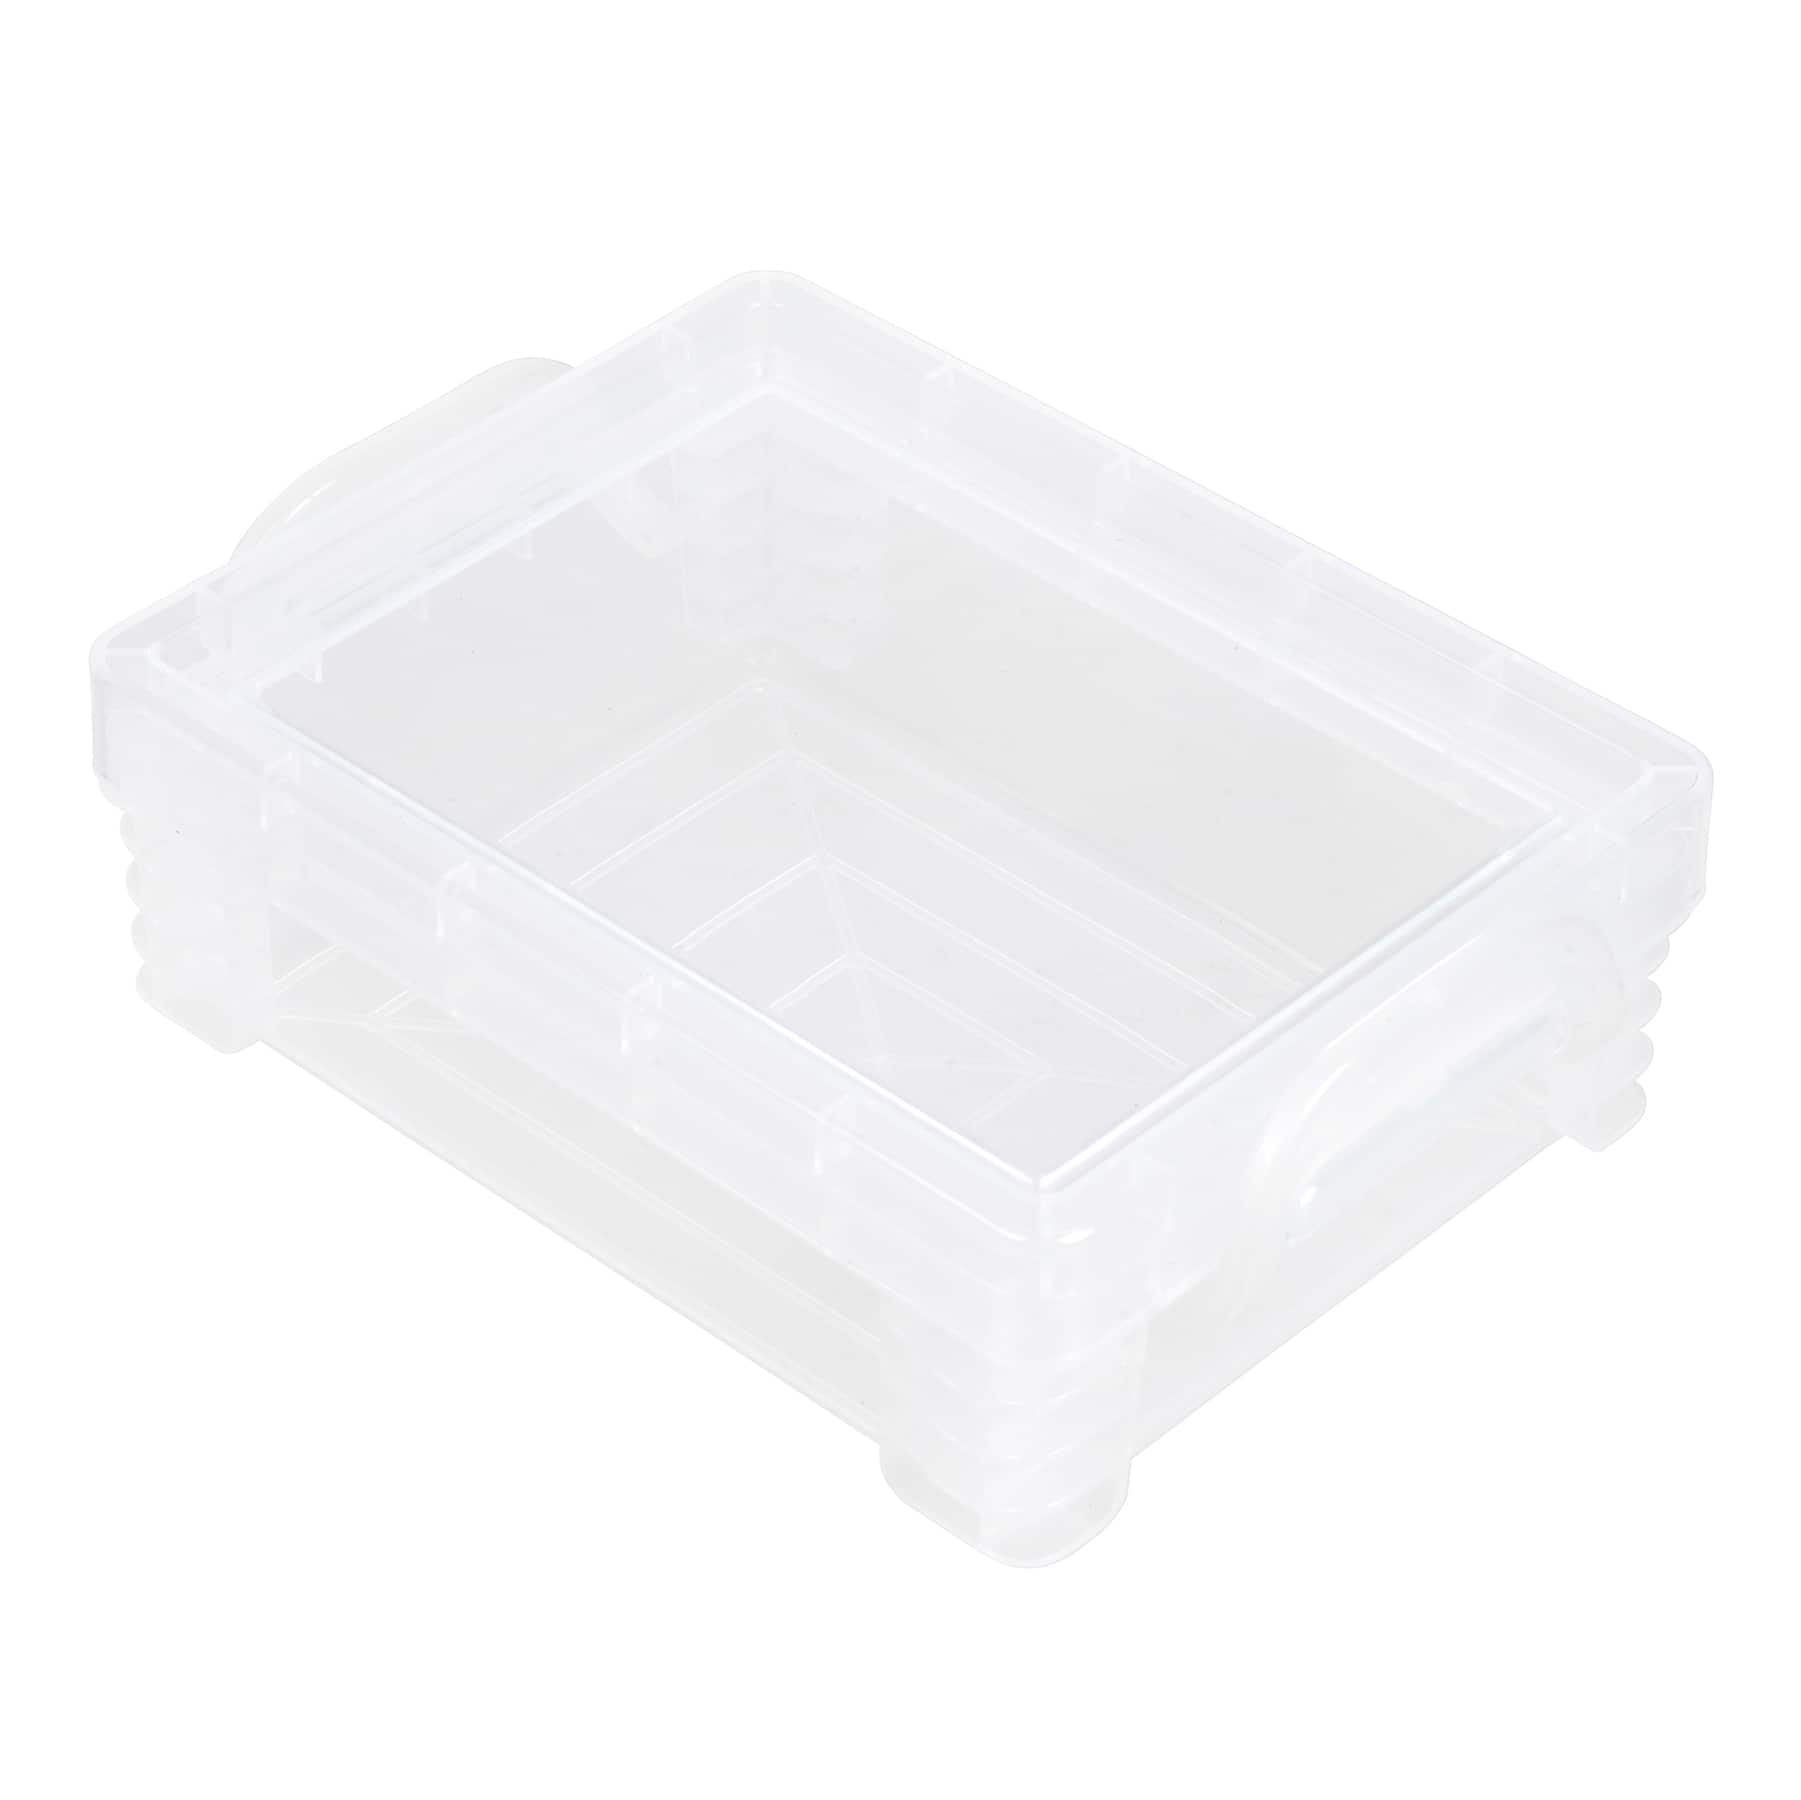 Crayon Box Storage Containers - Clear Crayon Case - Plastic Crayon